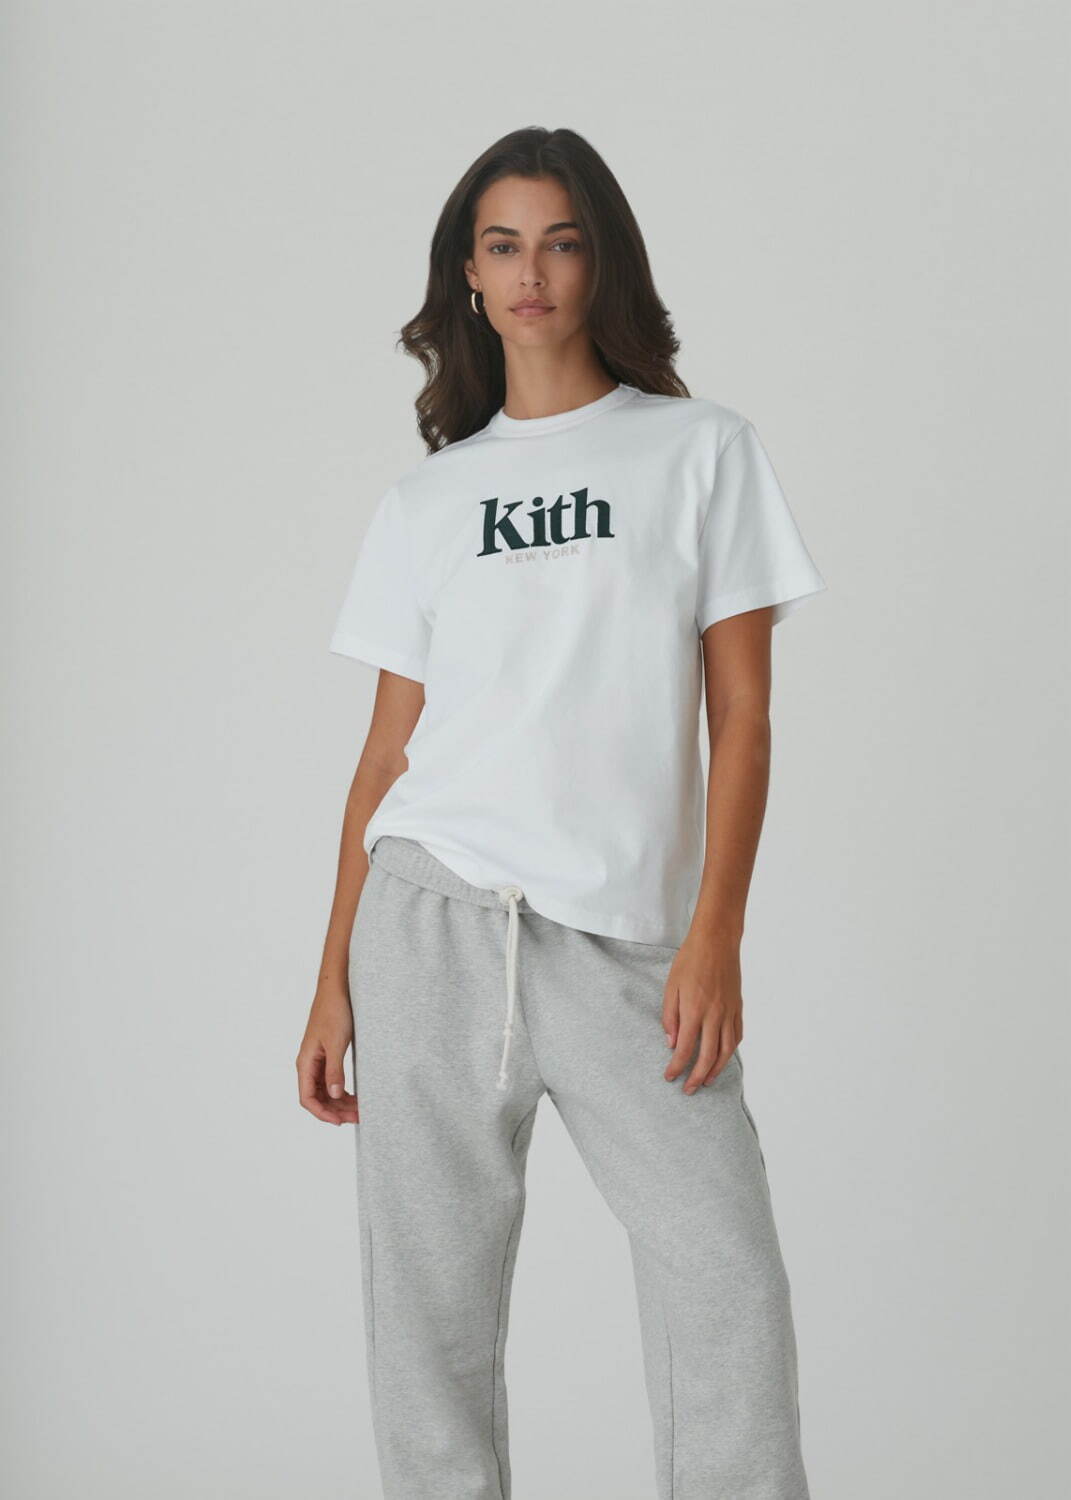 キス(Kith) 2021年春ウィメンズコレクション  - 写真94